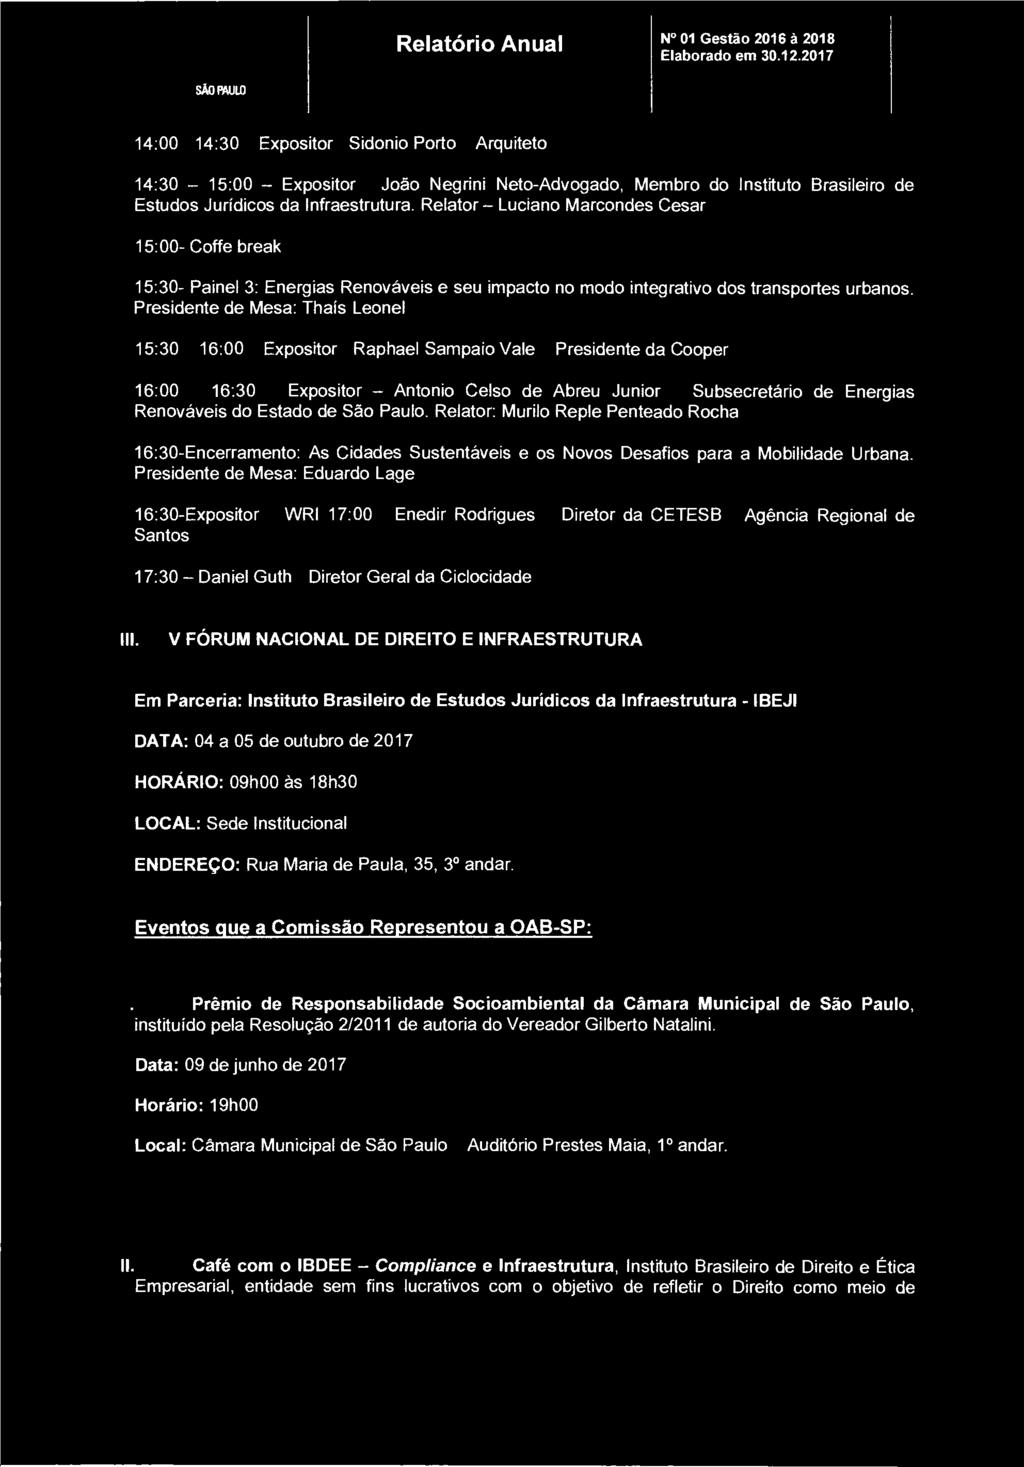 IML SÃO PAULO Relatório Anual N 01 Gestão 2016 à 2018 14:00-14:30 Expositor - Sidonio Porto Arquiteto 14:30 15:00 Expositor - João Negrini Neto-Advogado, Membro do Instituto Brasileiro de Estudos